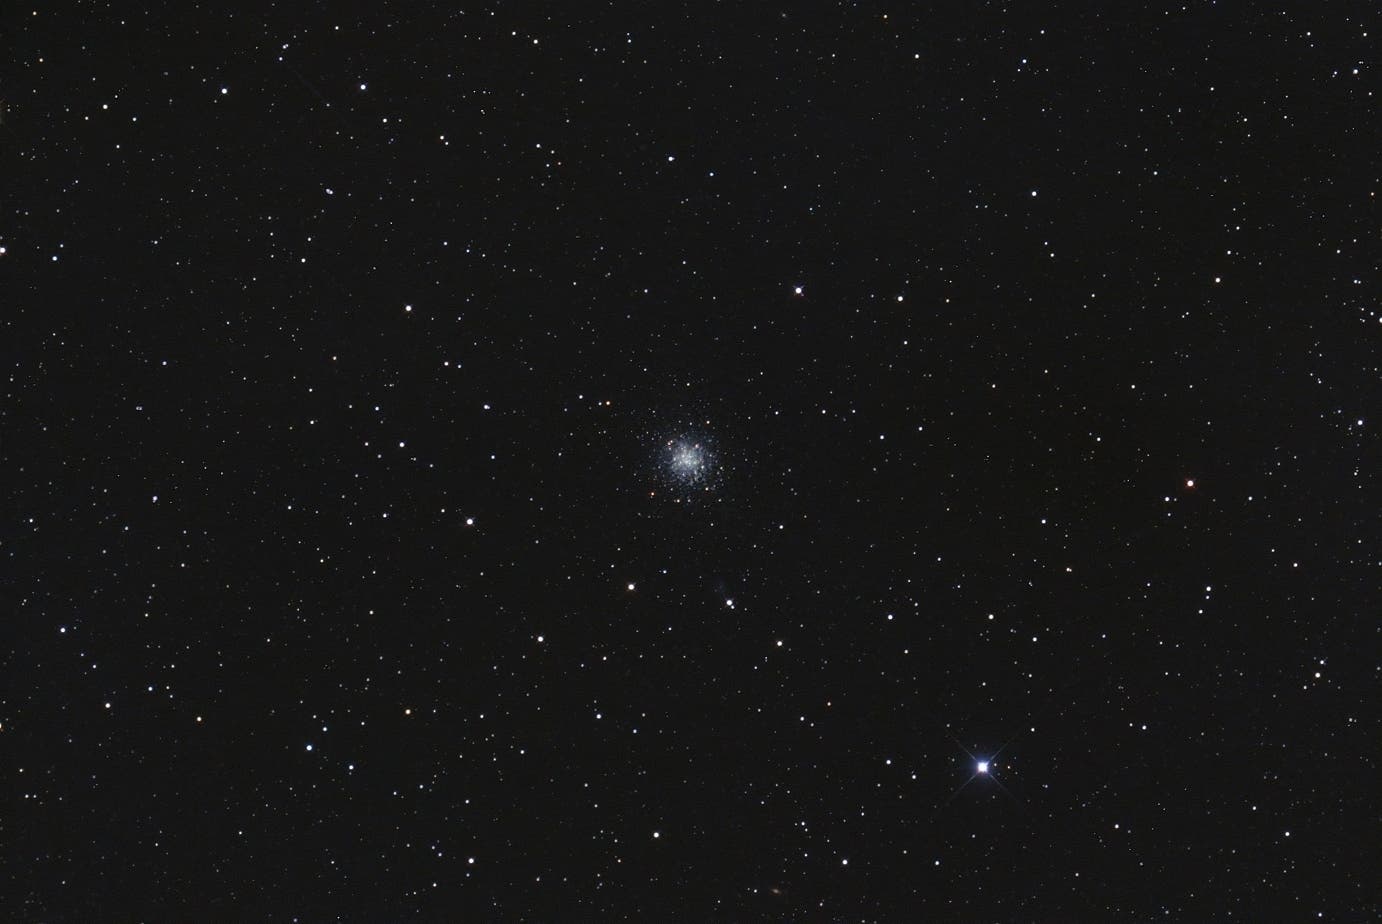 Messier 68